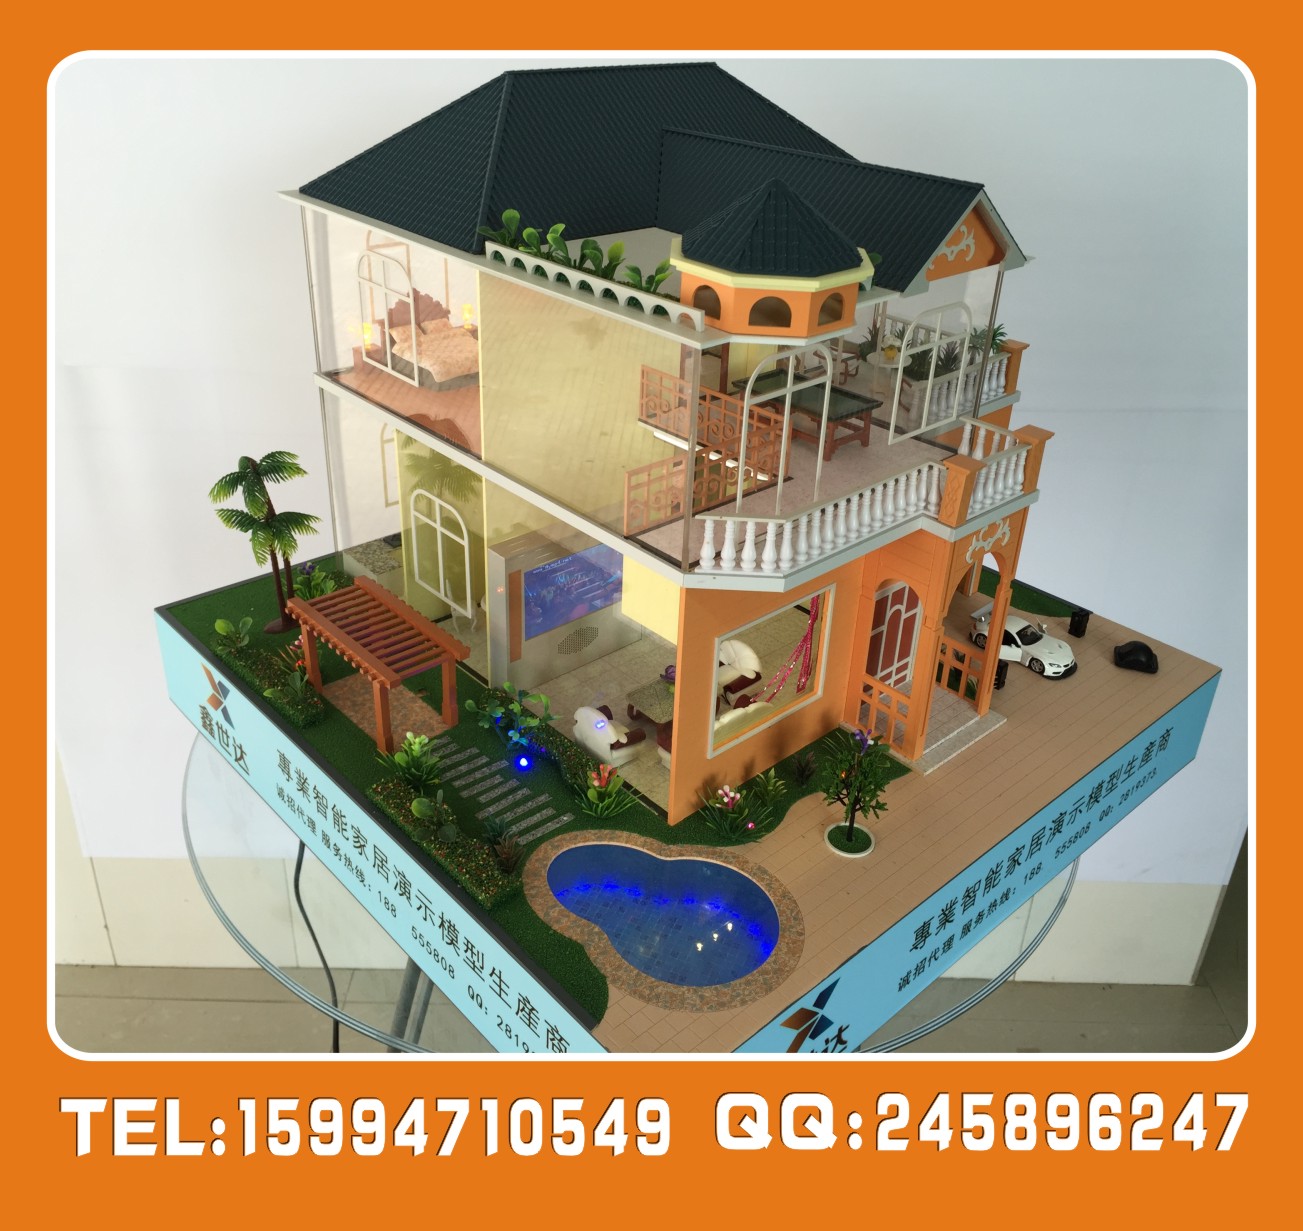 供应深圳智能别墅沙盘模型 智能演示模型 智能家居模型 别墅模型图片